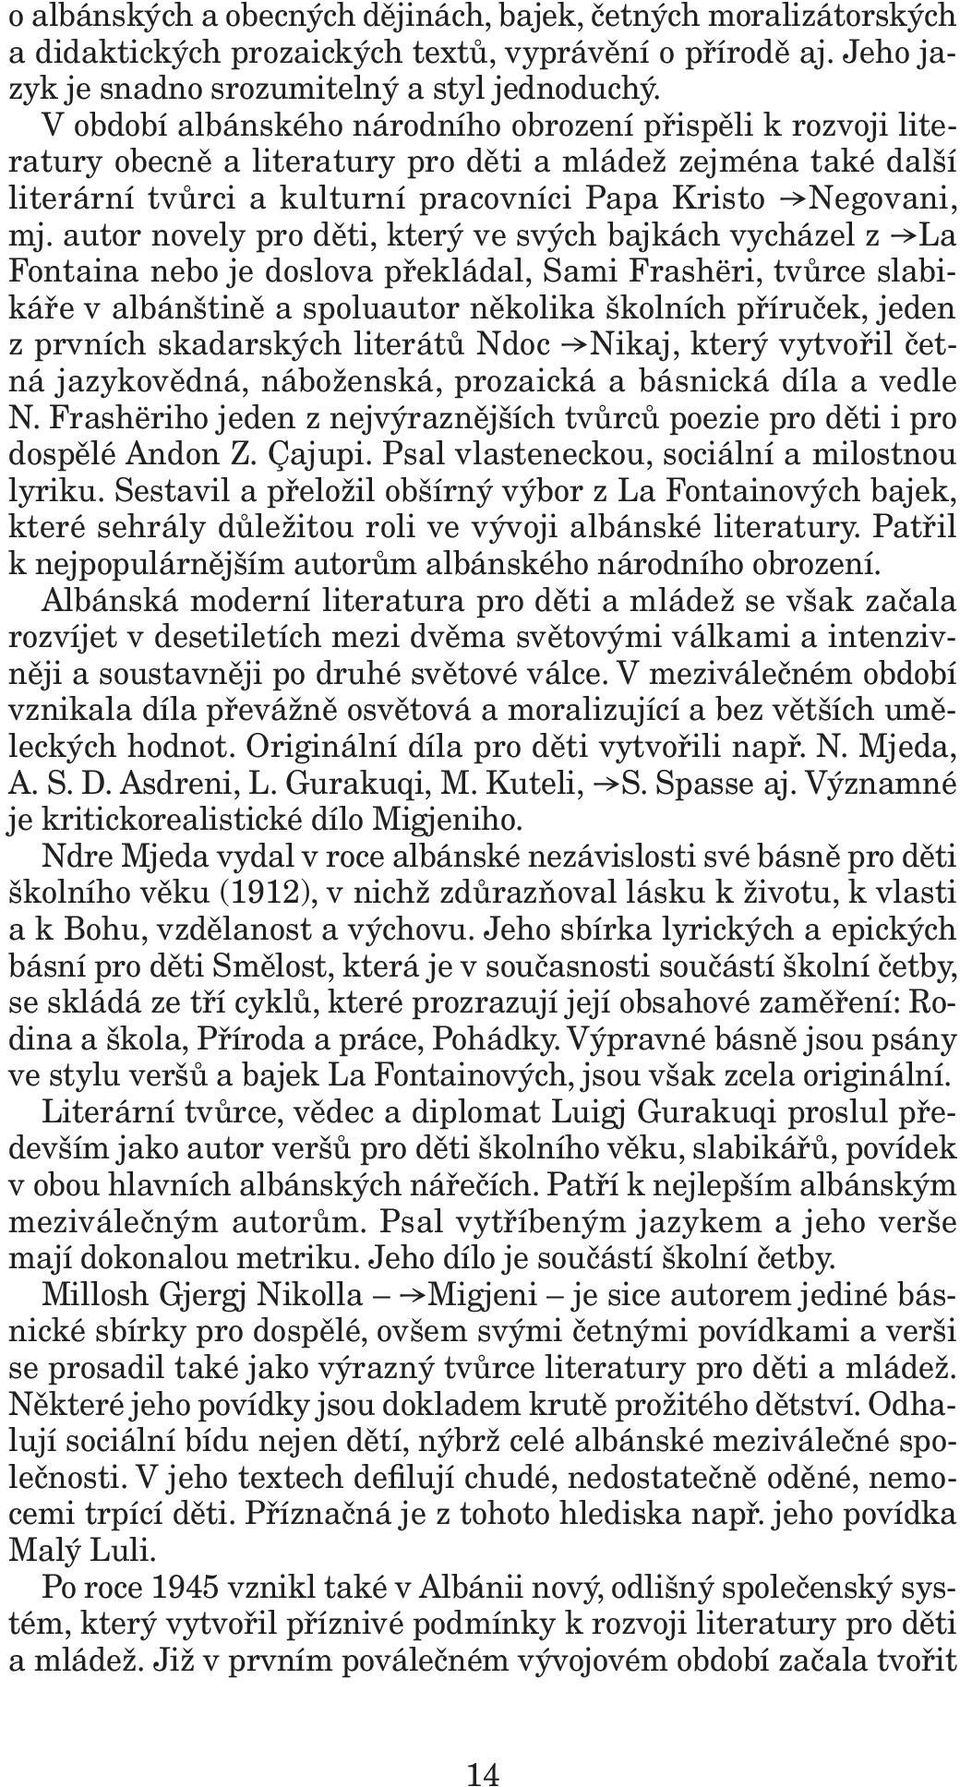 autor novely pro děti, který ve svých bajkách vycházel z La Fontaina nebo je doslova překládal, Sami Frashëri, tvůrce slabikáře v albánštině a spoluautor několika školních příruček, jeden z prvních